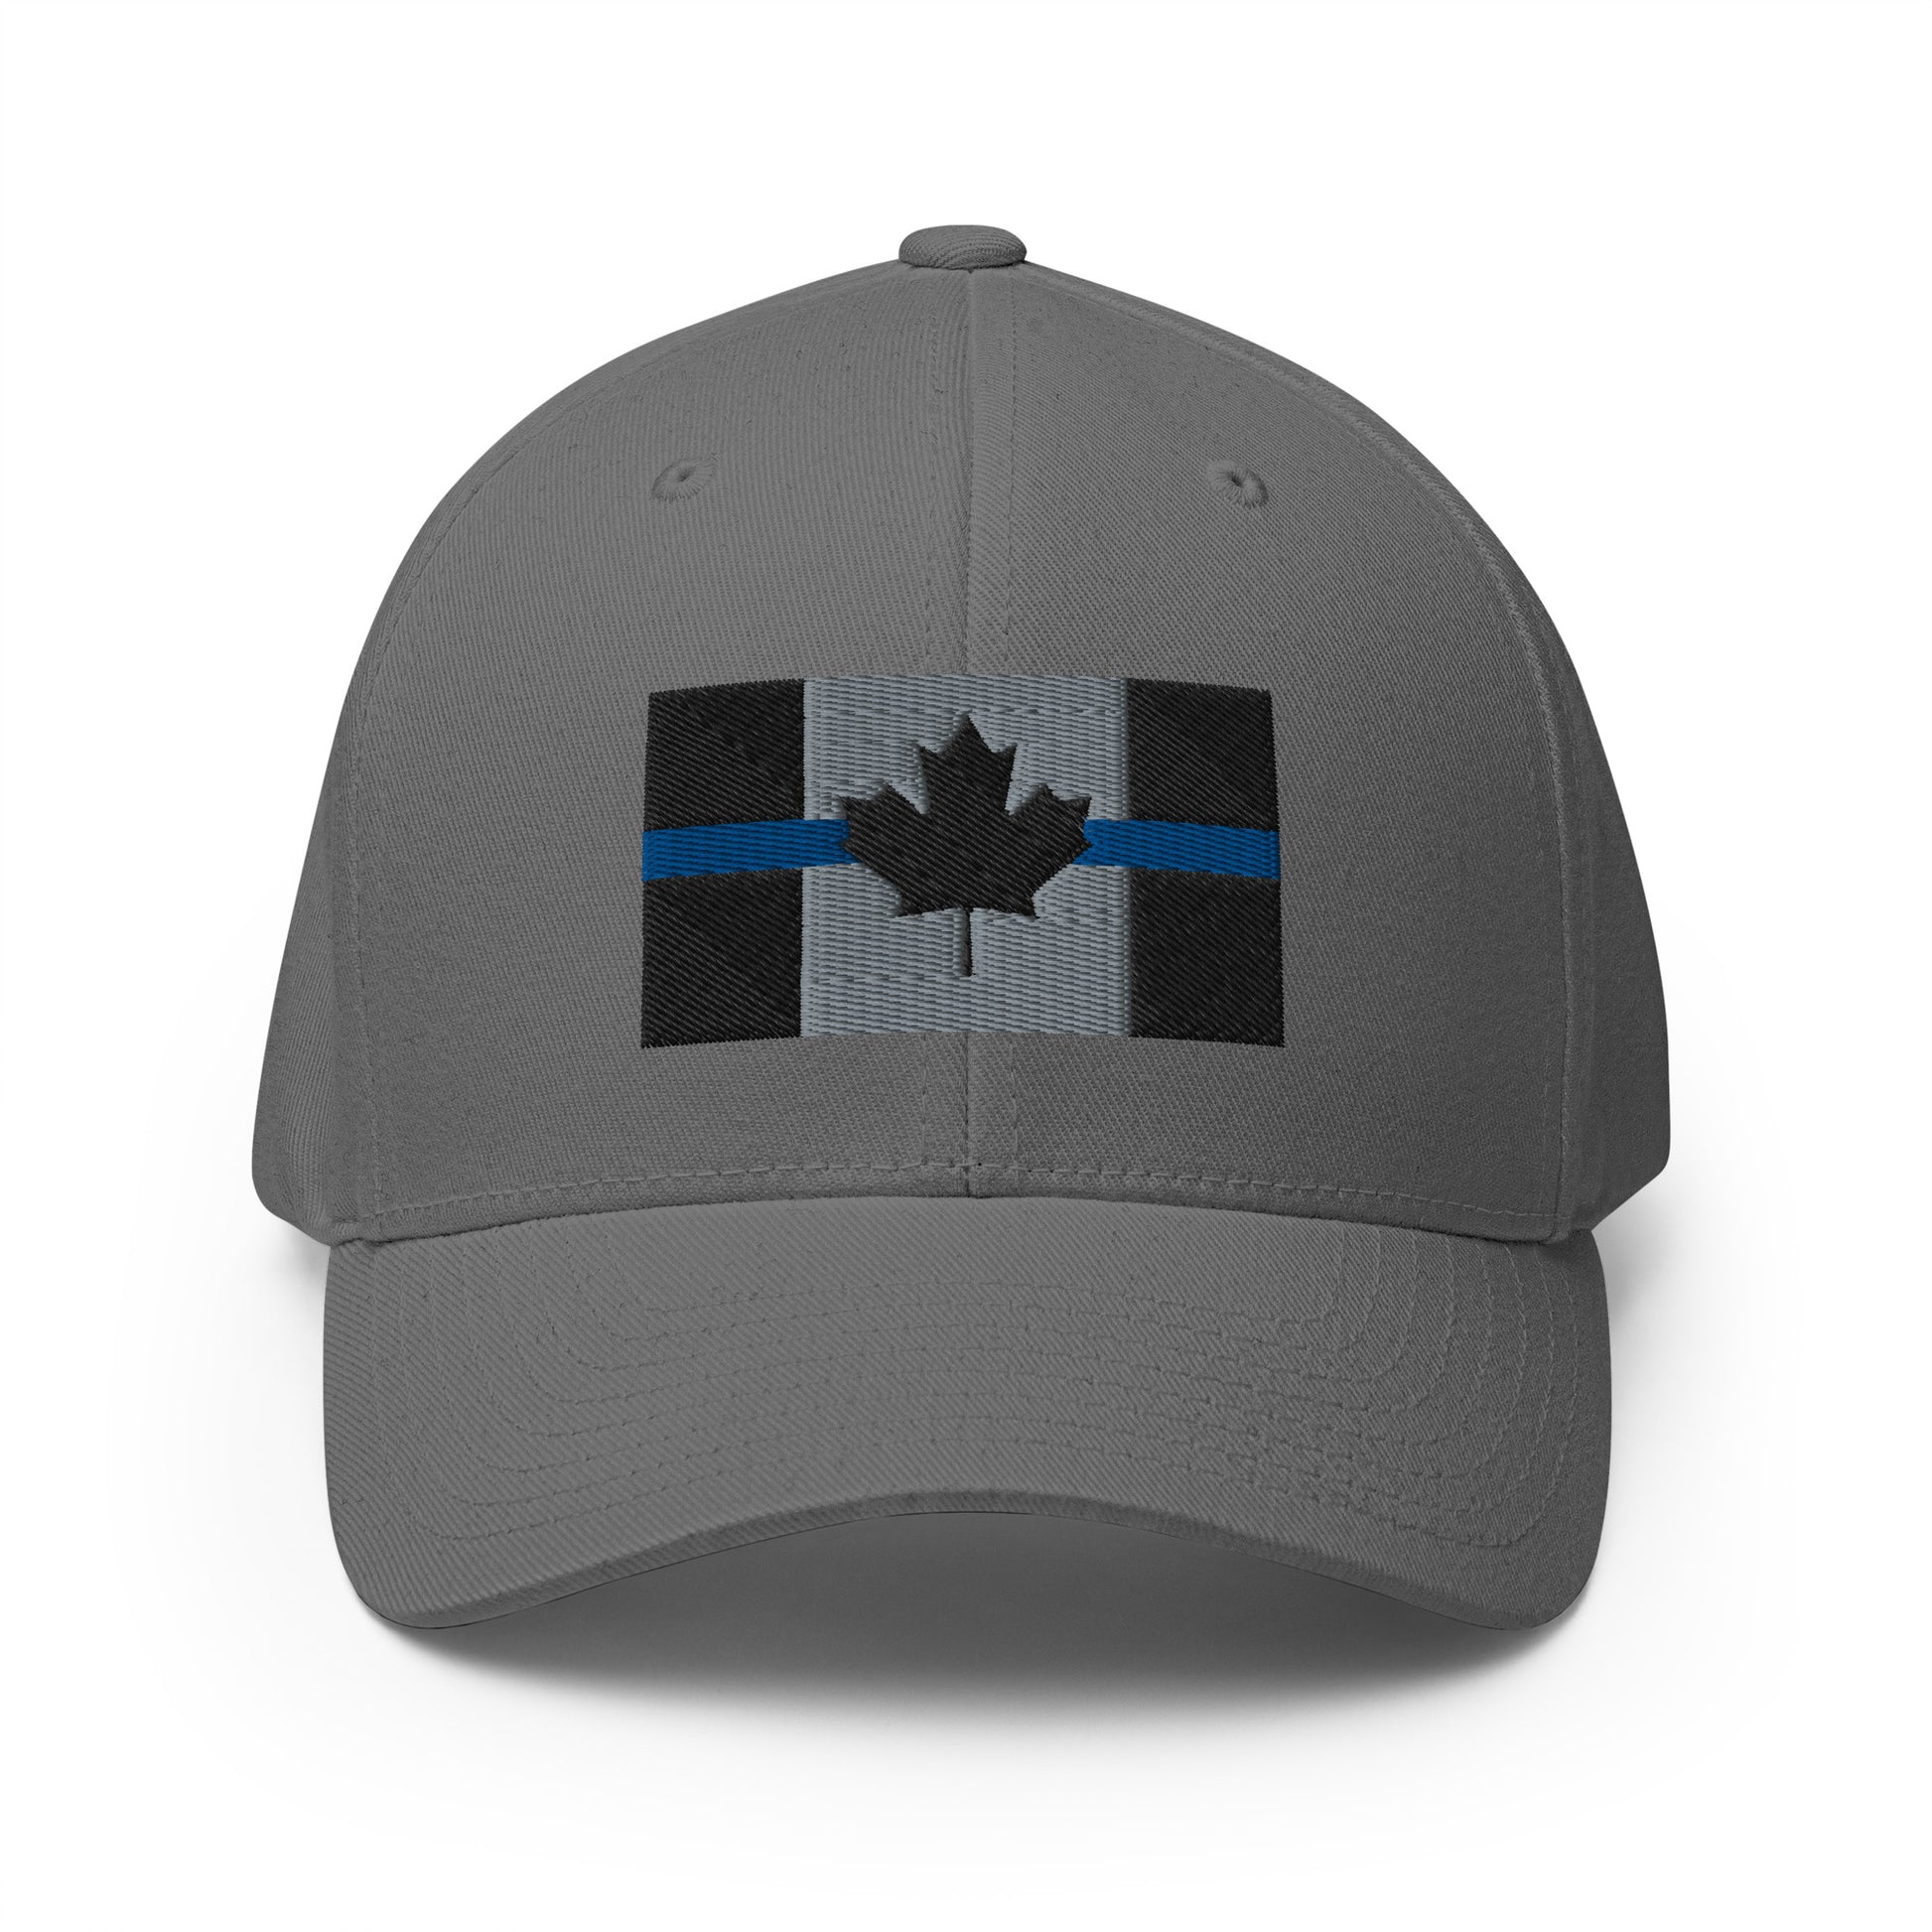 Thin Blue Line Flexfit Hat-911 Duty Gear Canada-911 Duty Gear Canada